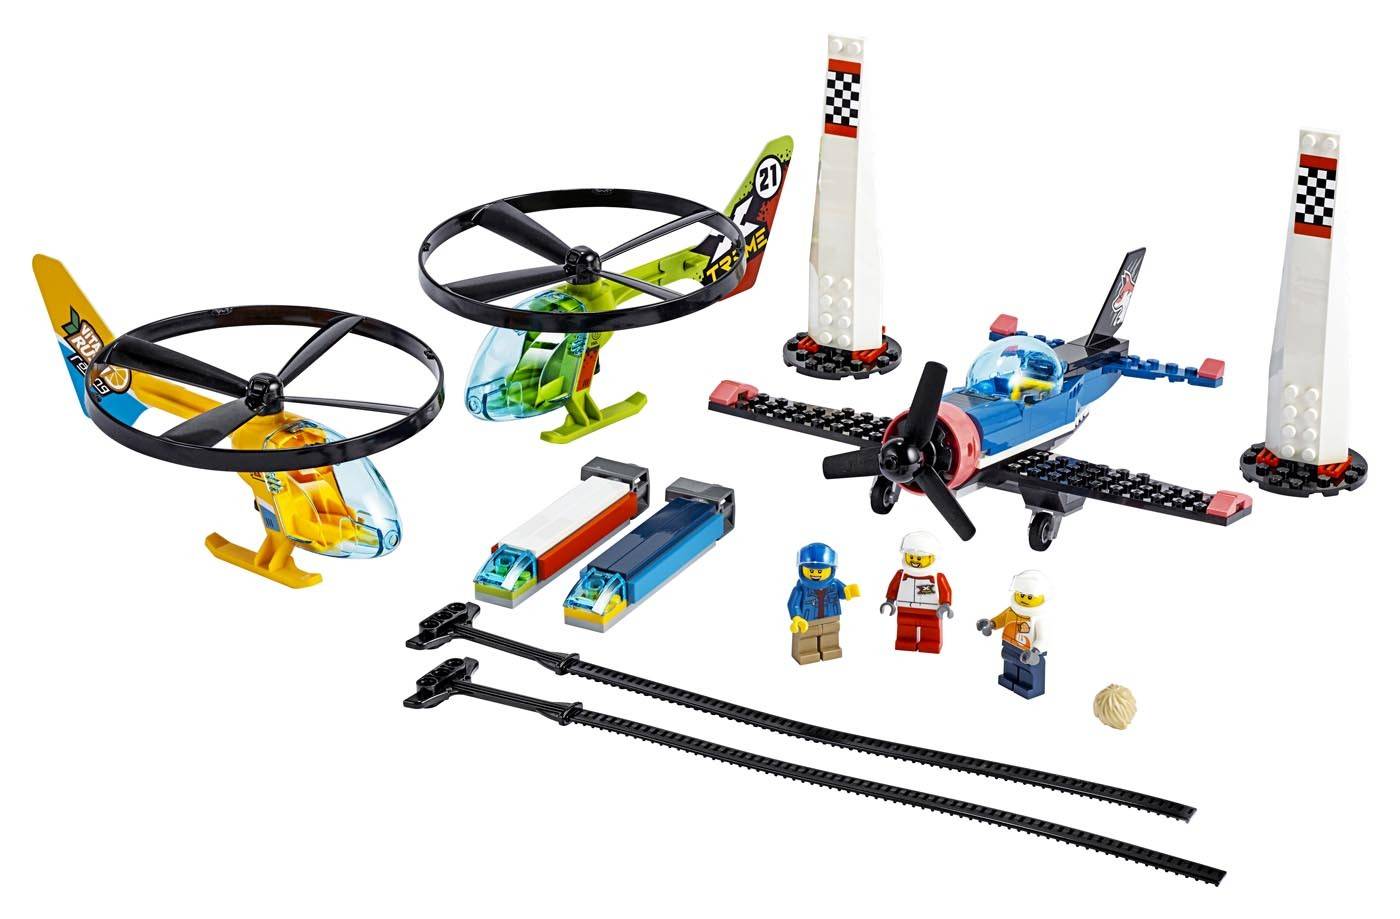 LEGO City Powietrzny wyścig 60260